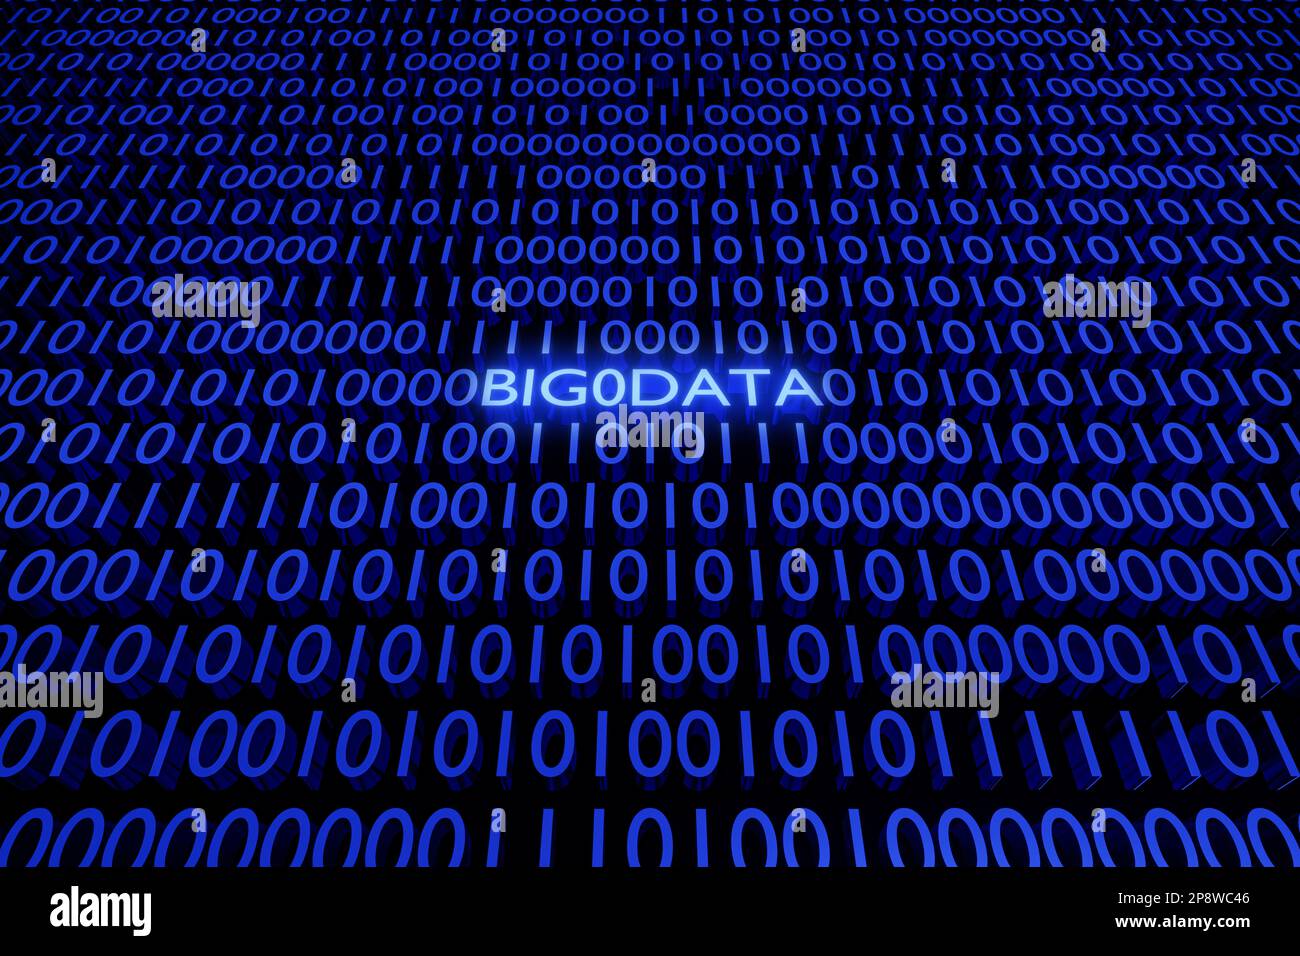 3D illustrazione del testo Big data tra la parete di 0 e 1 numeri. Zero e una cifra. Foto Stock